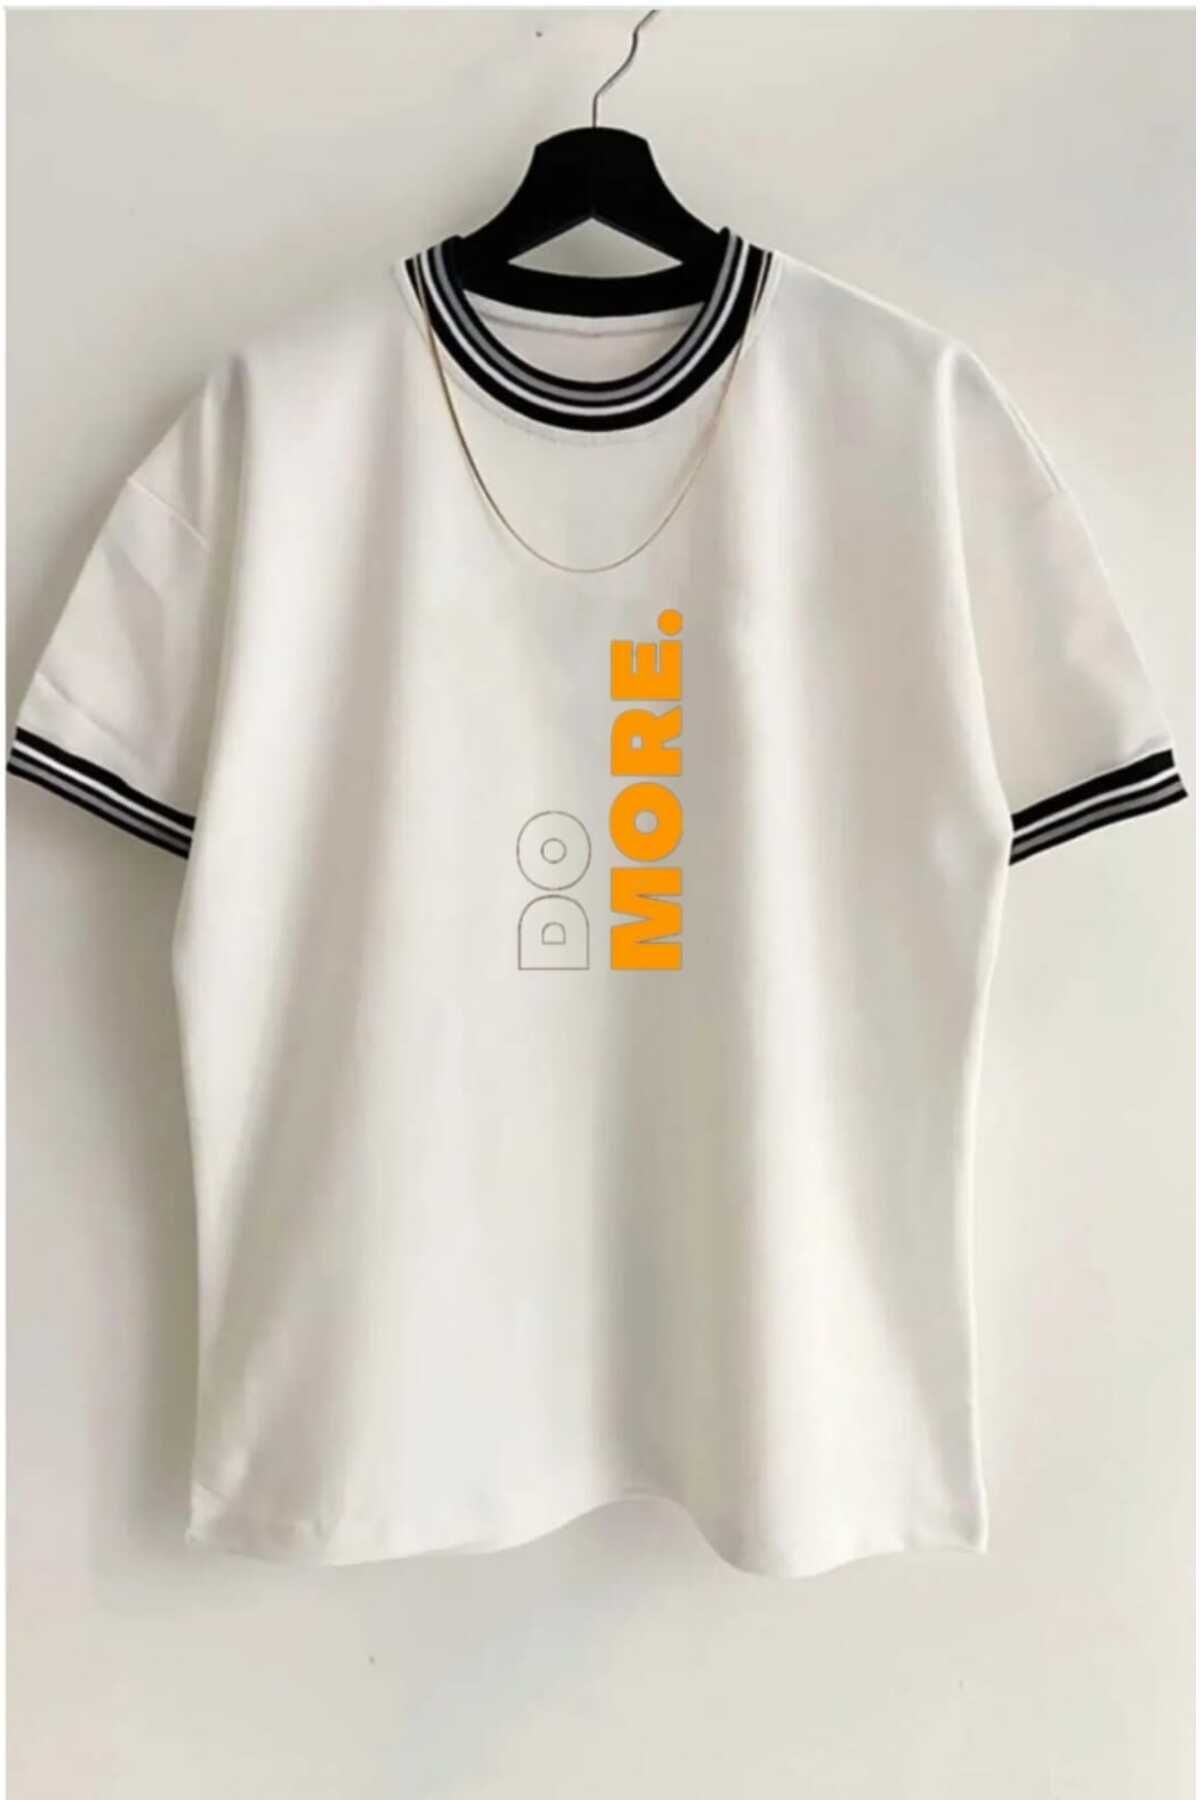 NİCE Oneoctobeer Unisex Yeni Sezon Oversize Kalıp Yaka Detaylı Yazlık T-shirt